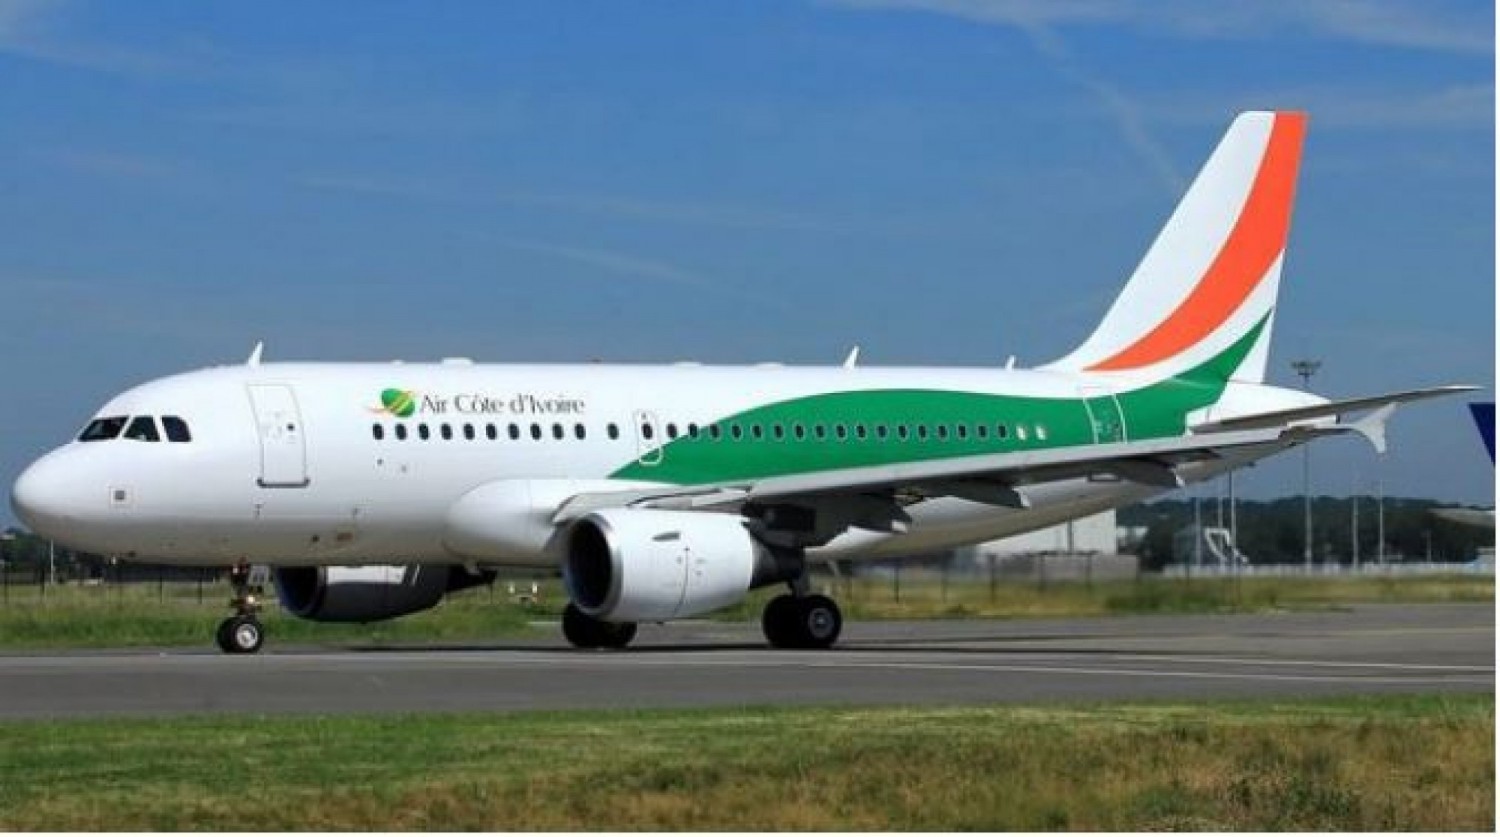 Côte d'Ivoire-Mali : Tentative de saisie d'un aéronef de la Compagnie Air Côte d'Ivoire à Bamako, les précisions de la Direction